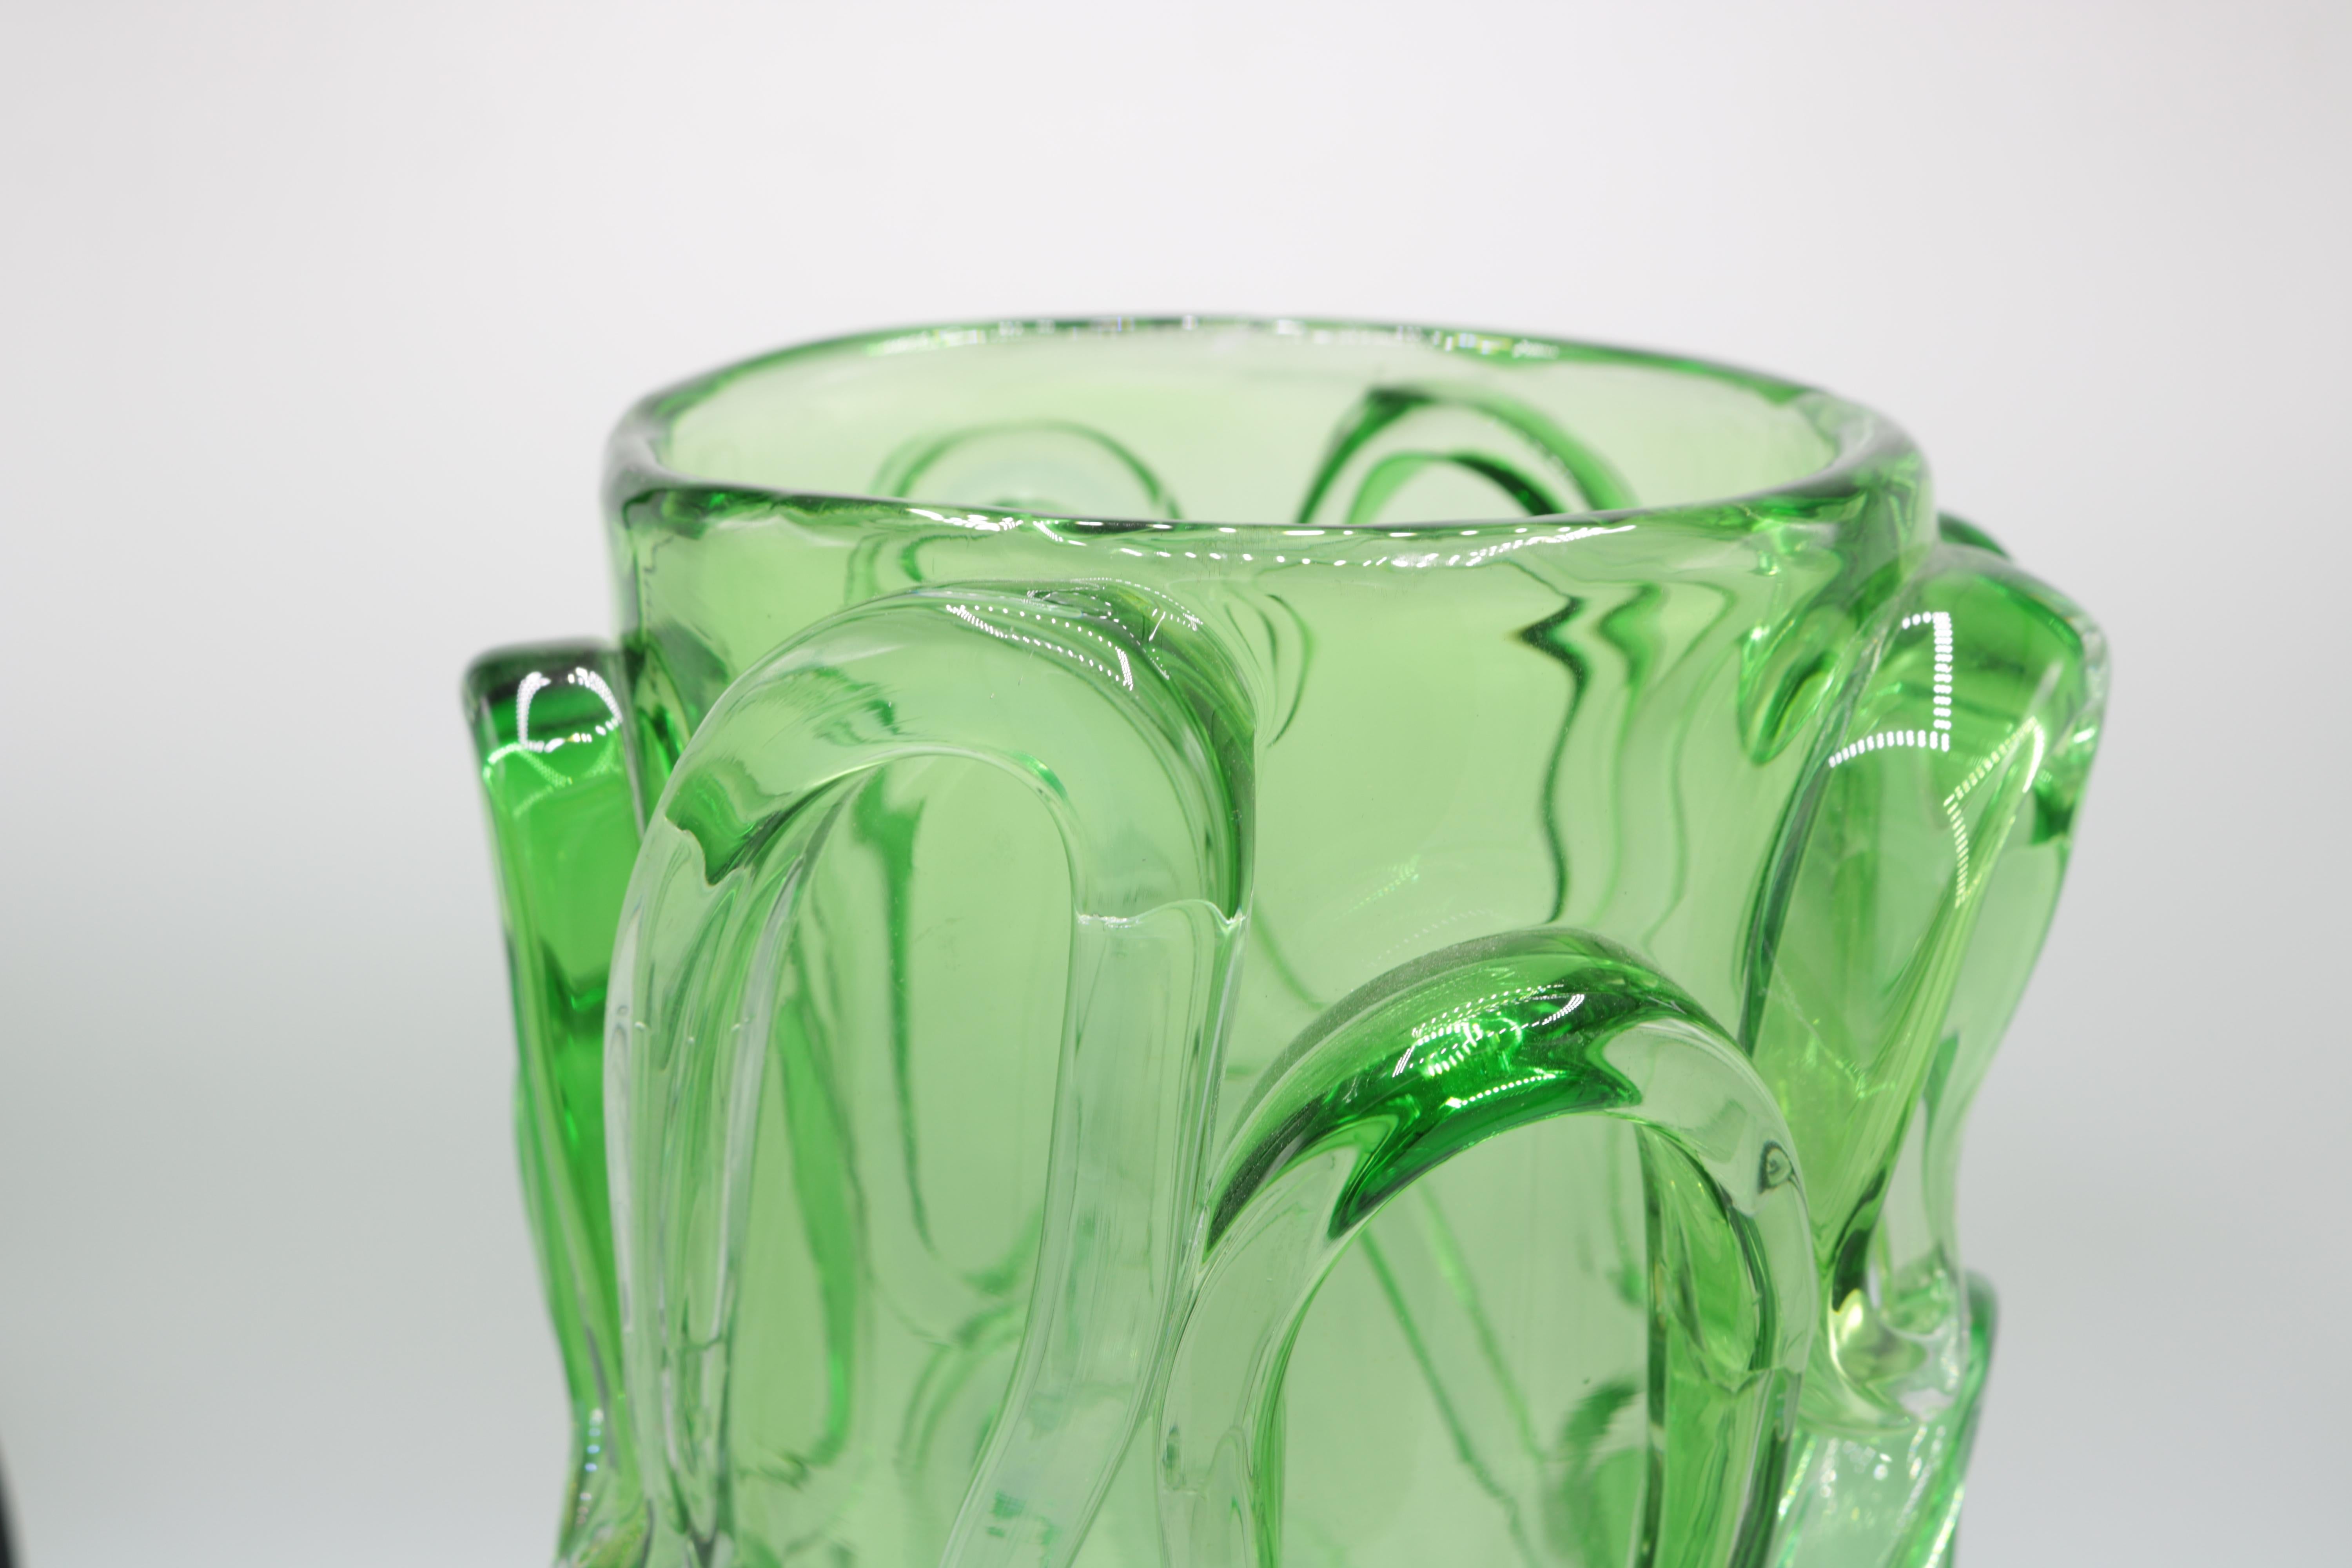 Vase aus Kunstglas von Martin Postch in limitierter Auflage. 
Grünes Glas mit aufgesetzten Zacken. 
Geätzte Signatur auf der Unterseite.